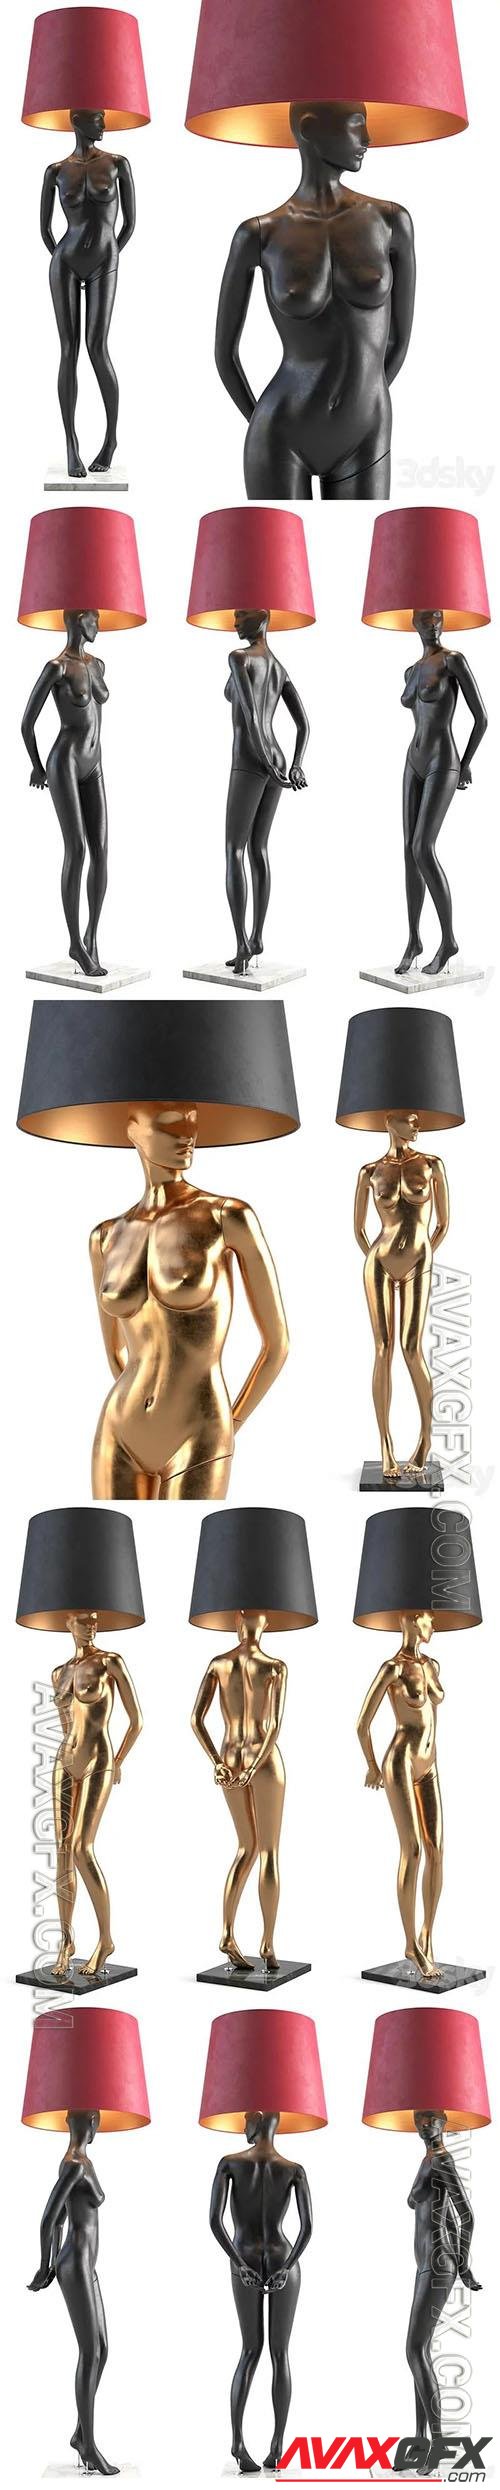 Mannequin Floor Lamp Rebekka - 3d model